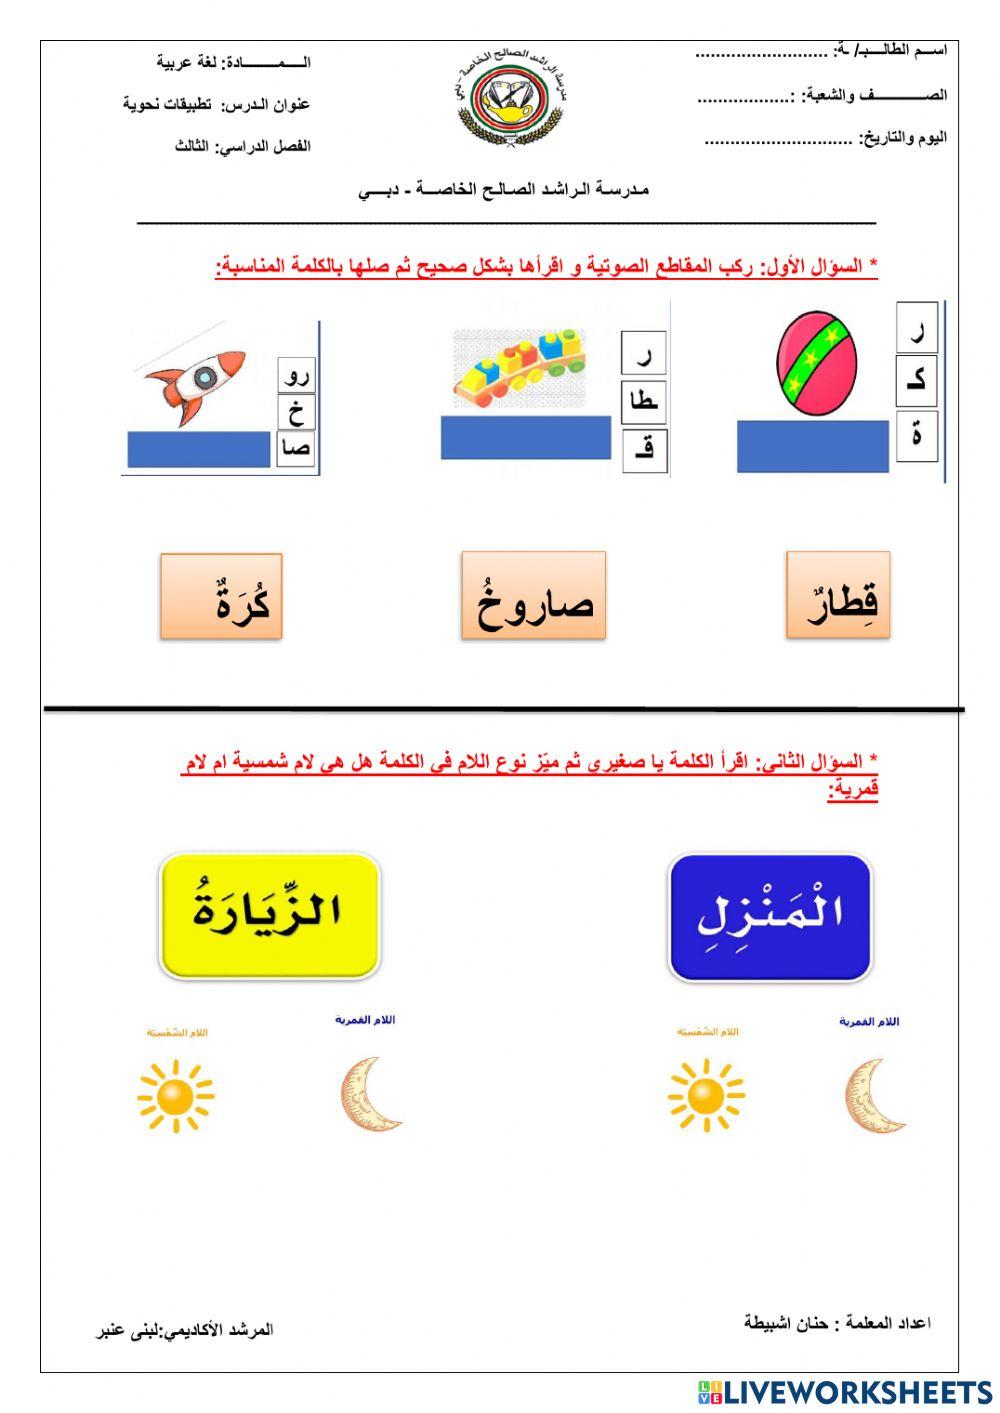 اللغة العربية - تركيب